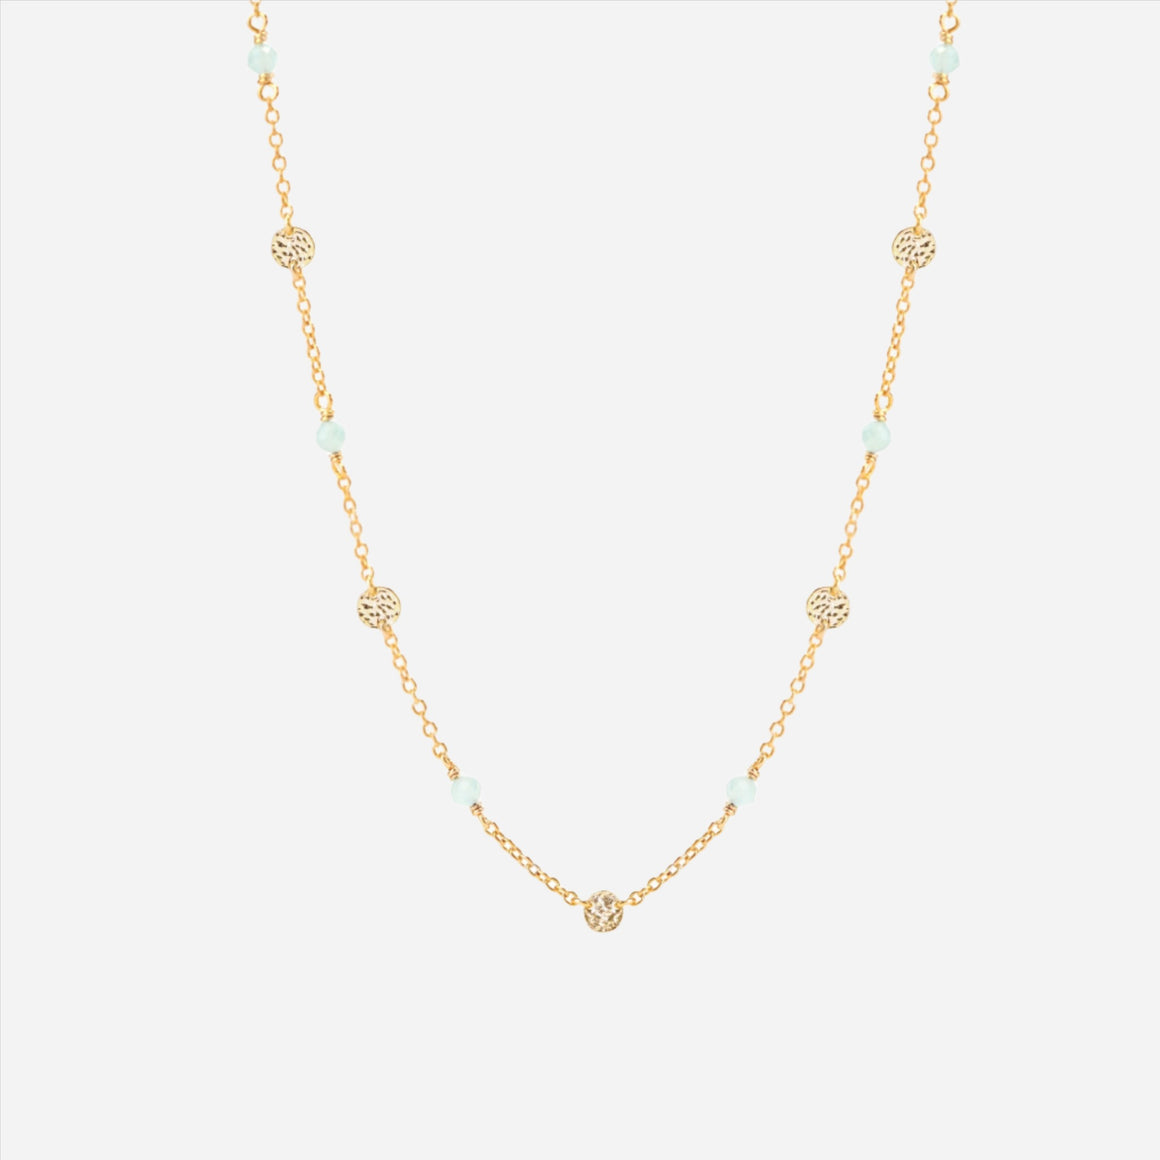 Aqua blue gemstone necklace